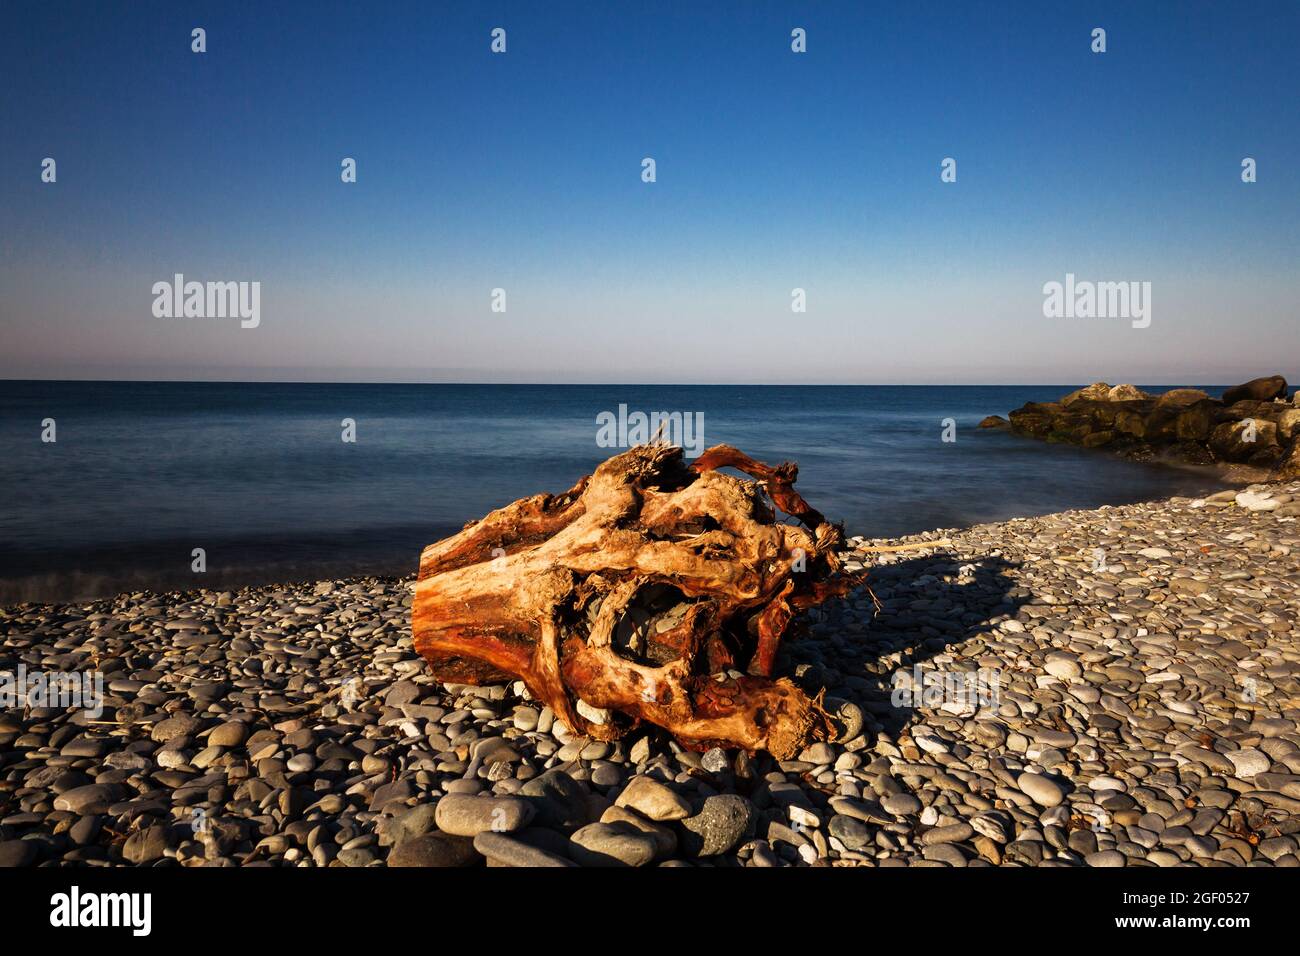 Un vieux arbre pourri pump sur un bord de mer vide. Banque D'Images